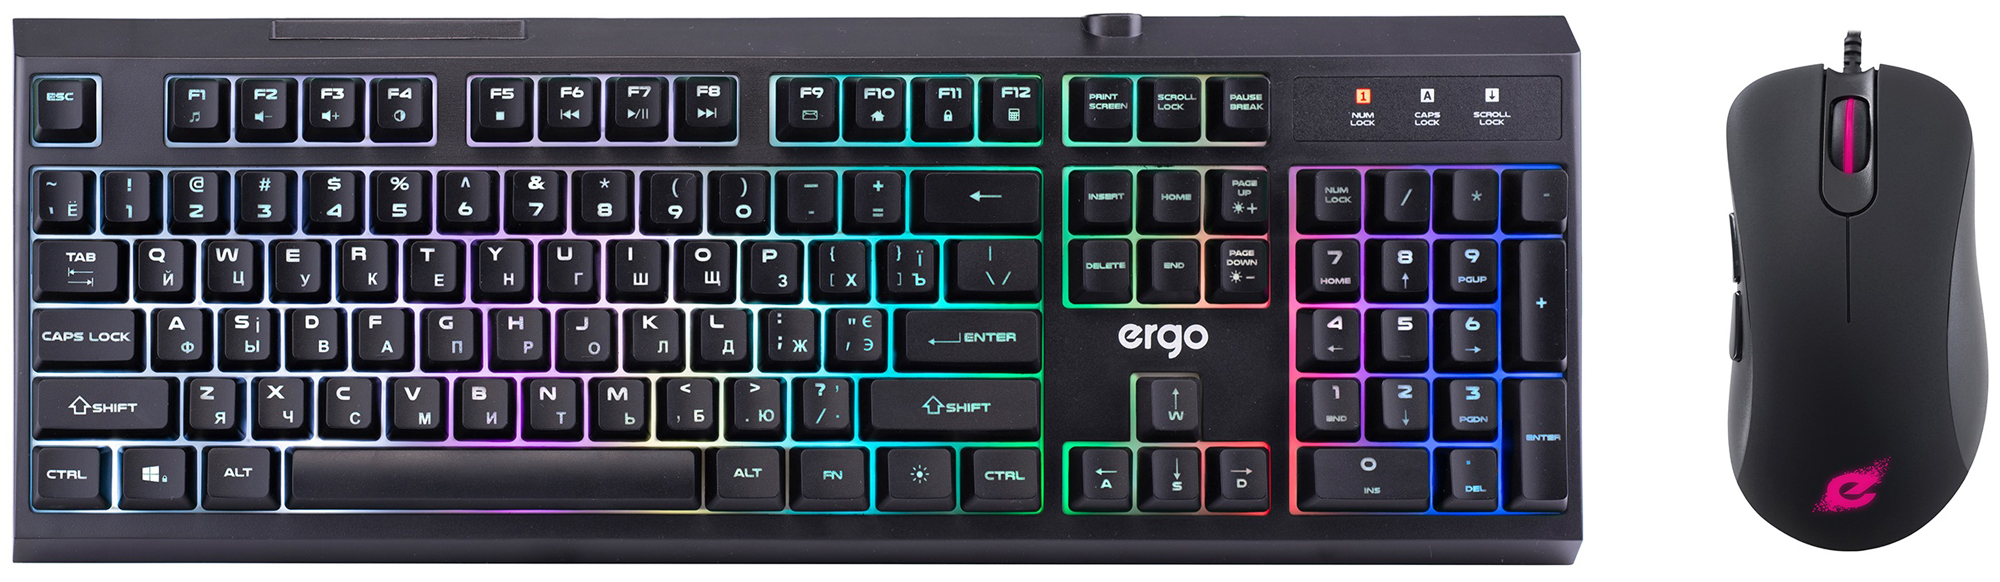 Игровой комплект 2в1 ERGO MK-800KM Keyboard & Mouse (KIT 830+960) (6721877) в Киеве